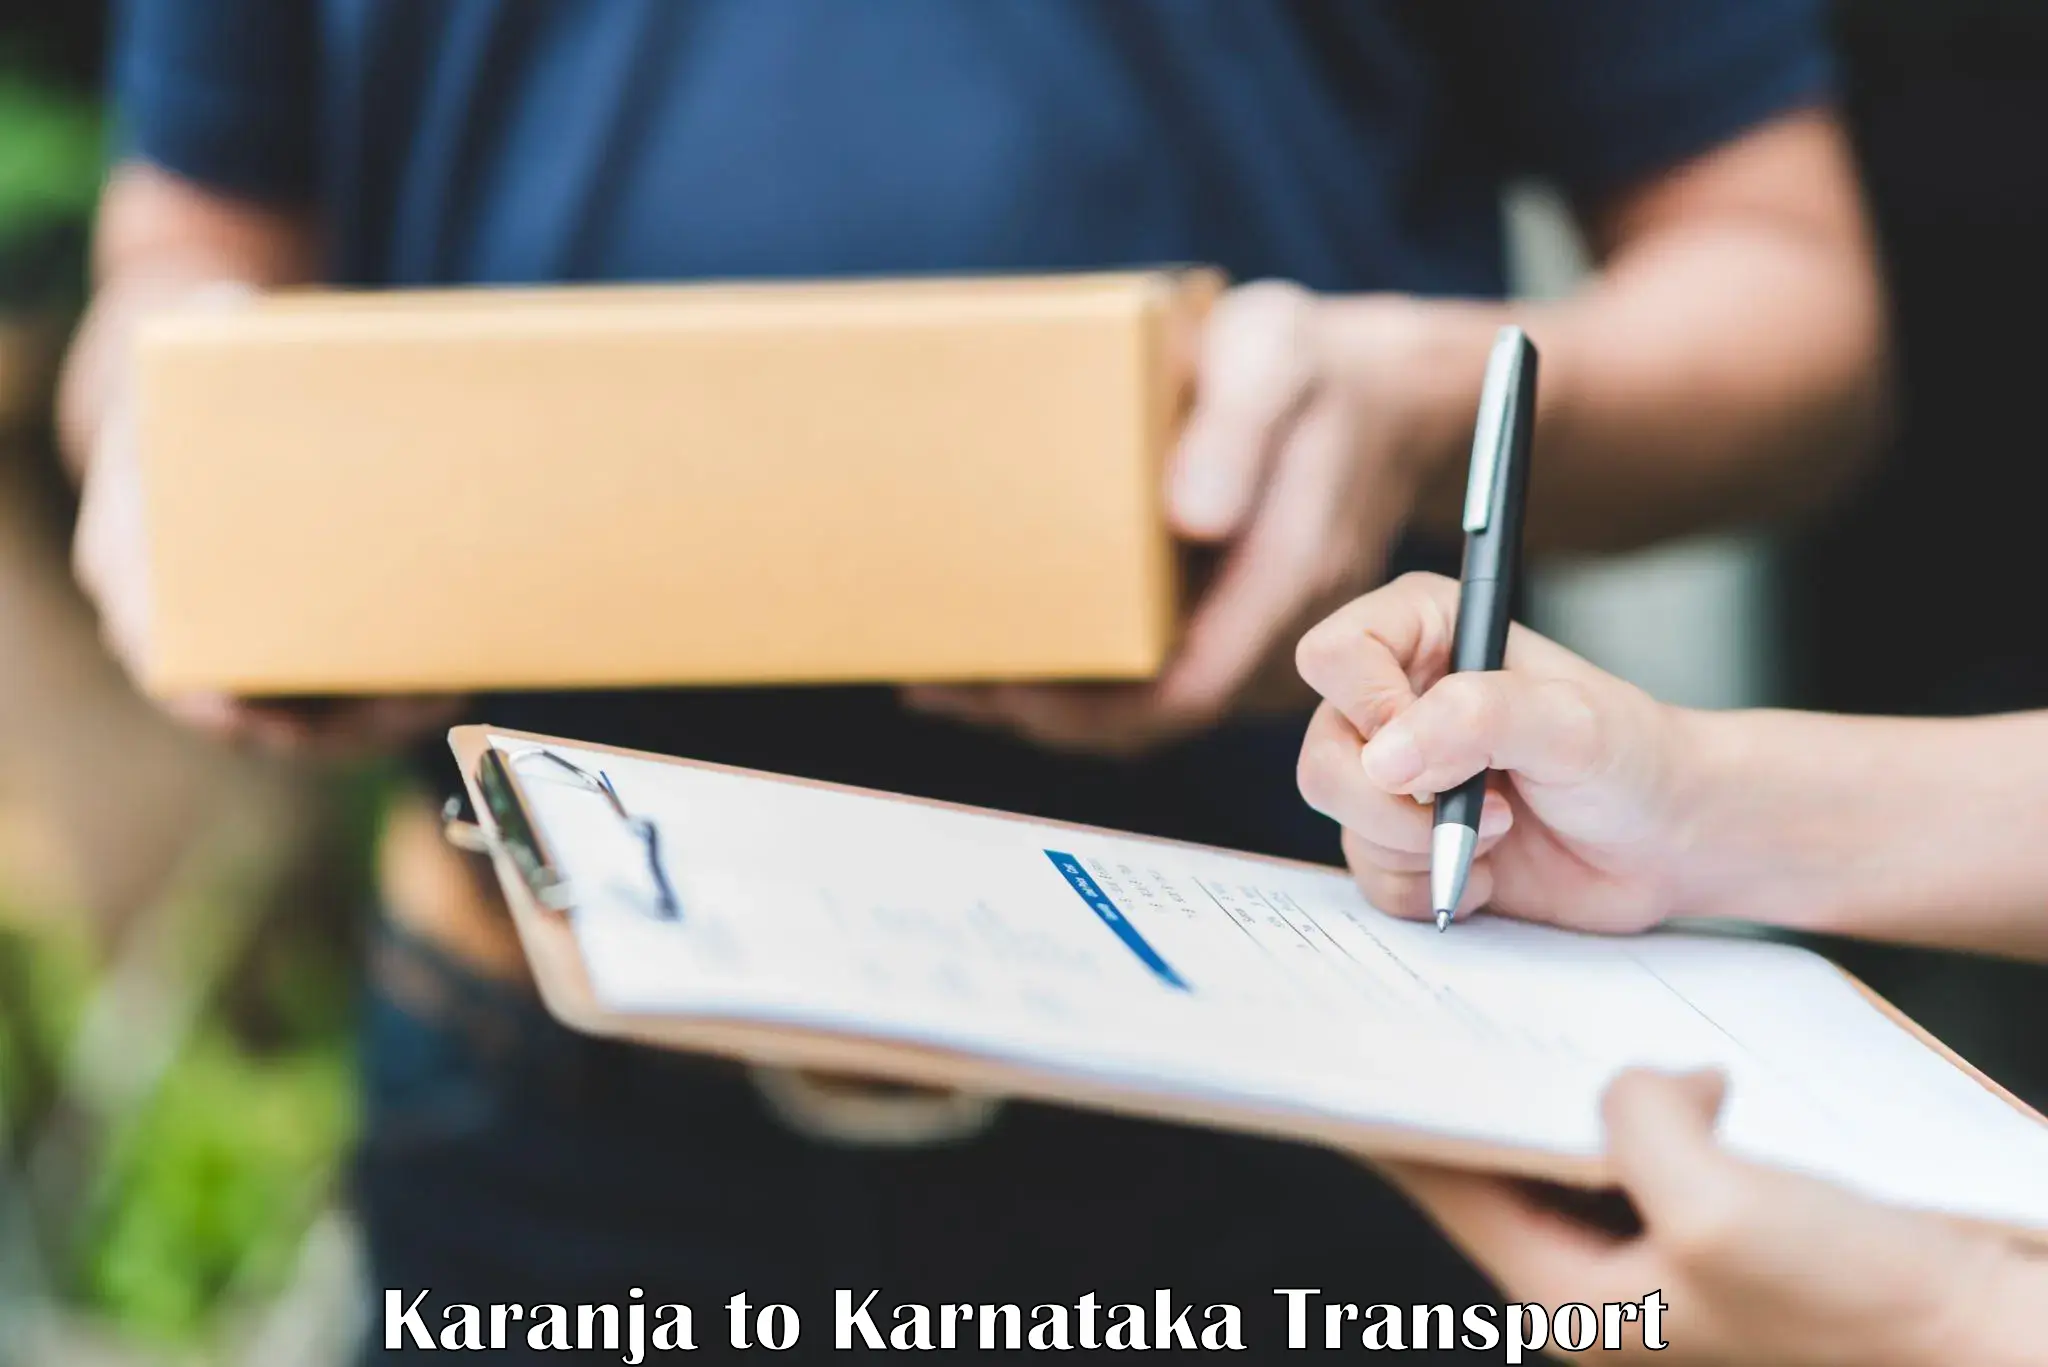 Cargo transport services Karanja to Karnataka